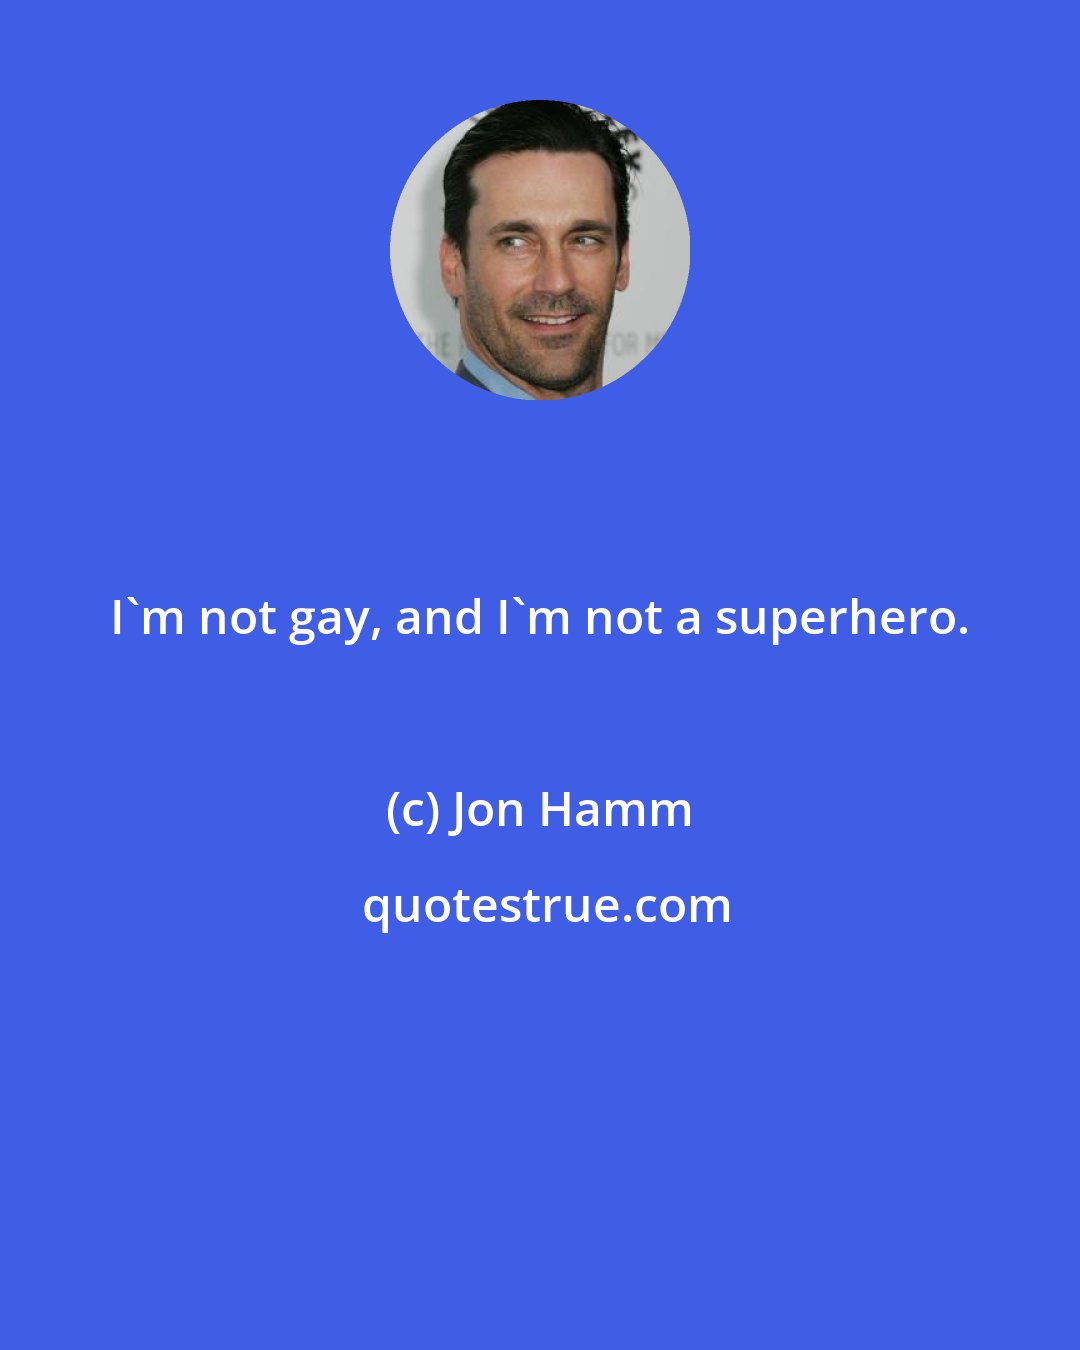 Jon Hamm: I'm not gay, and I'm not a superhero.